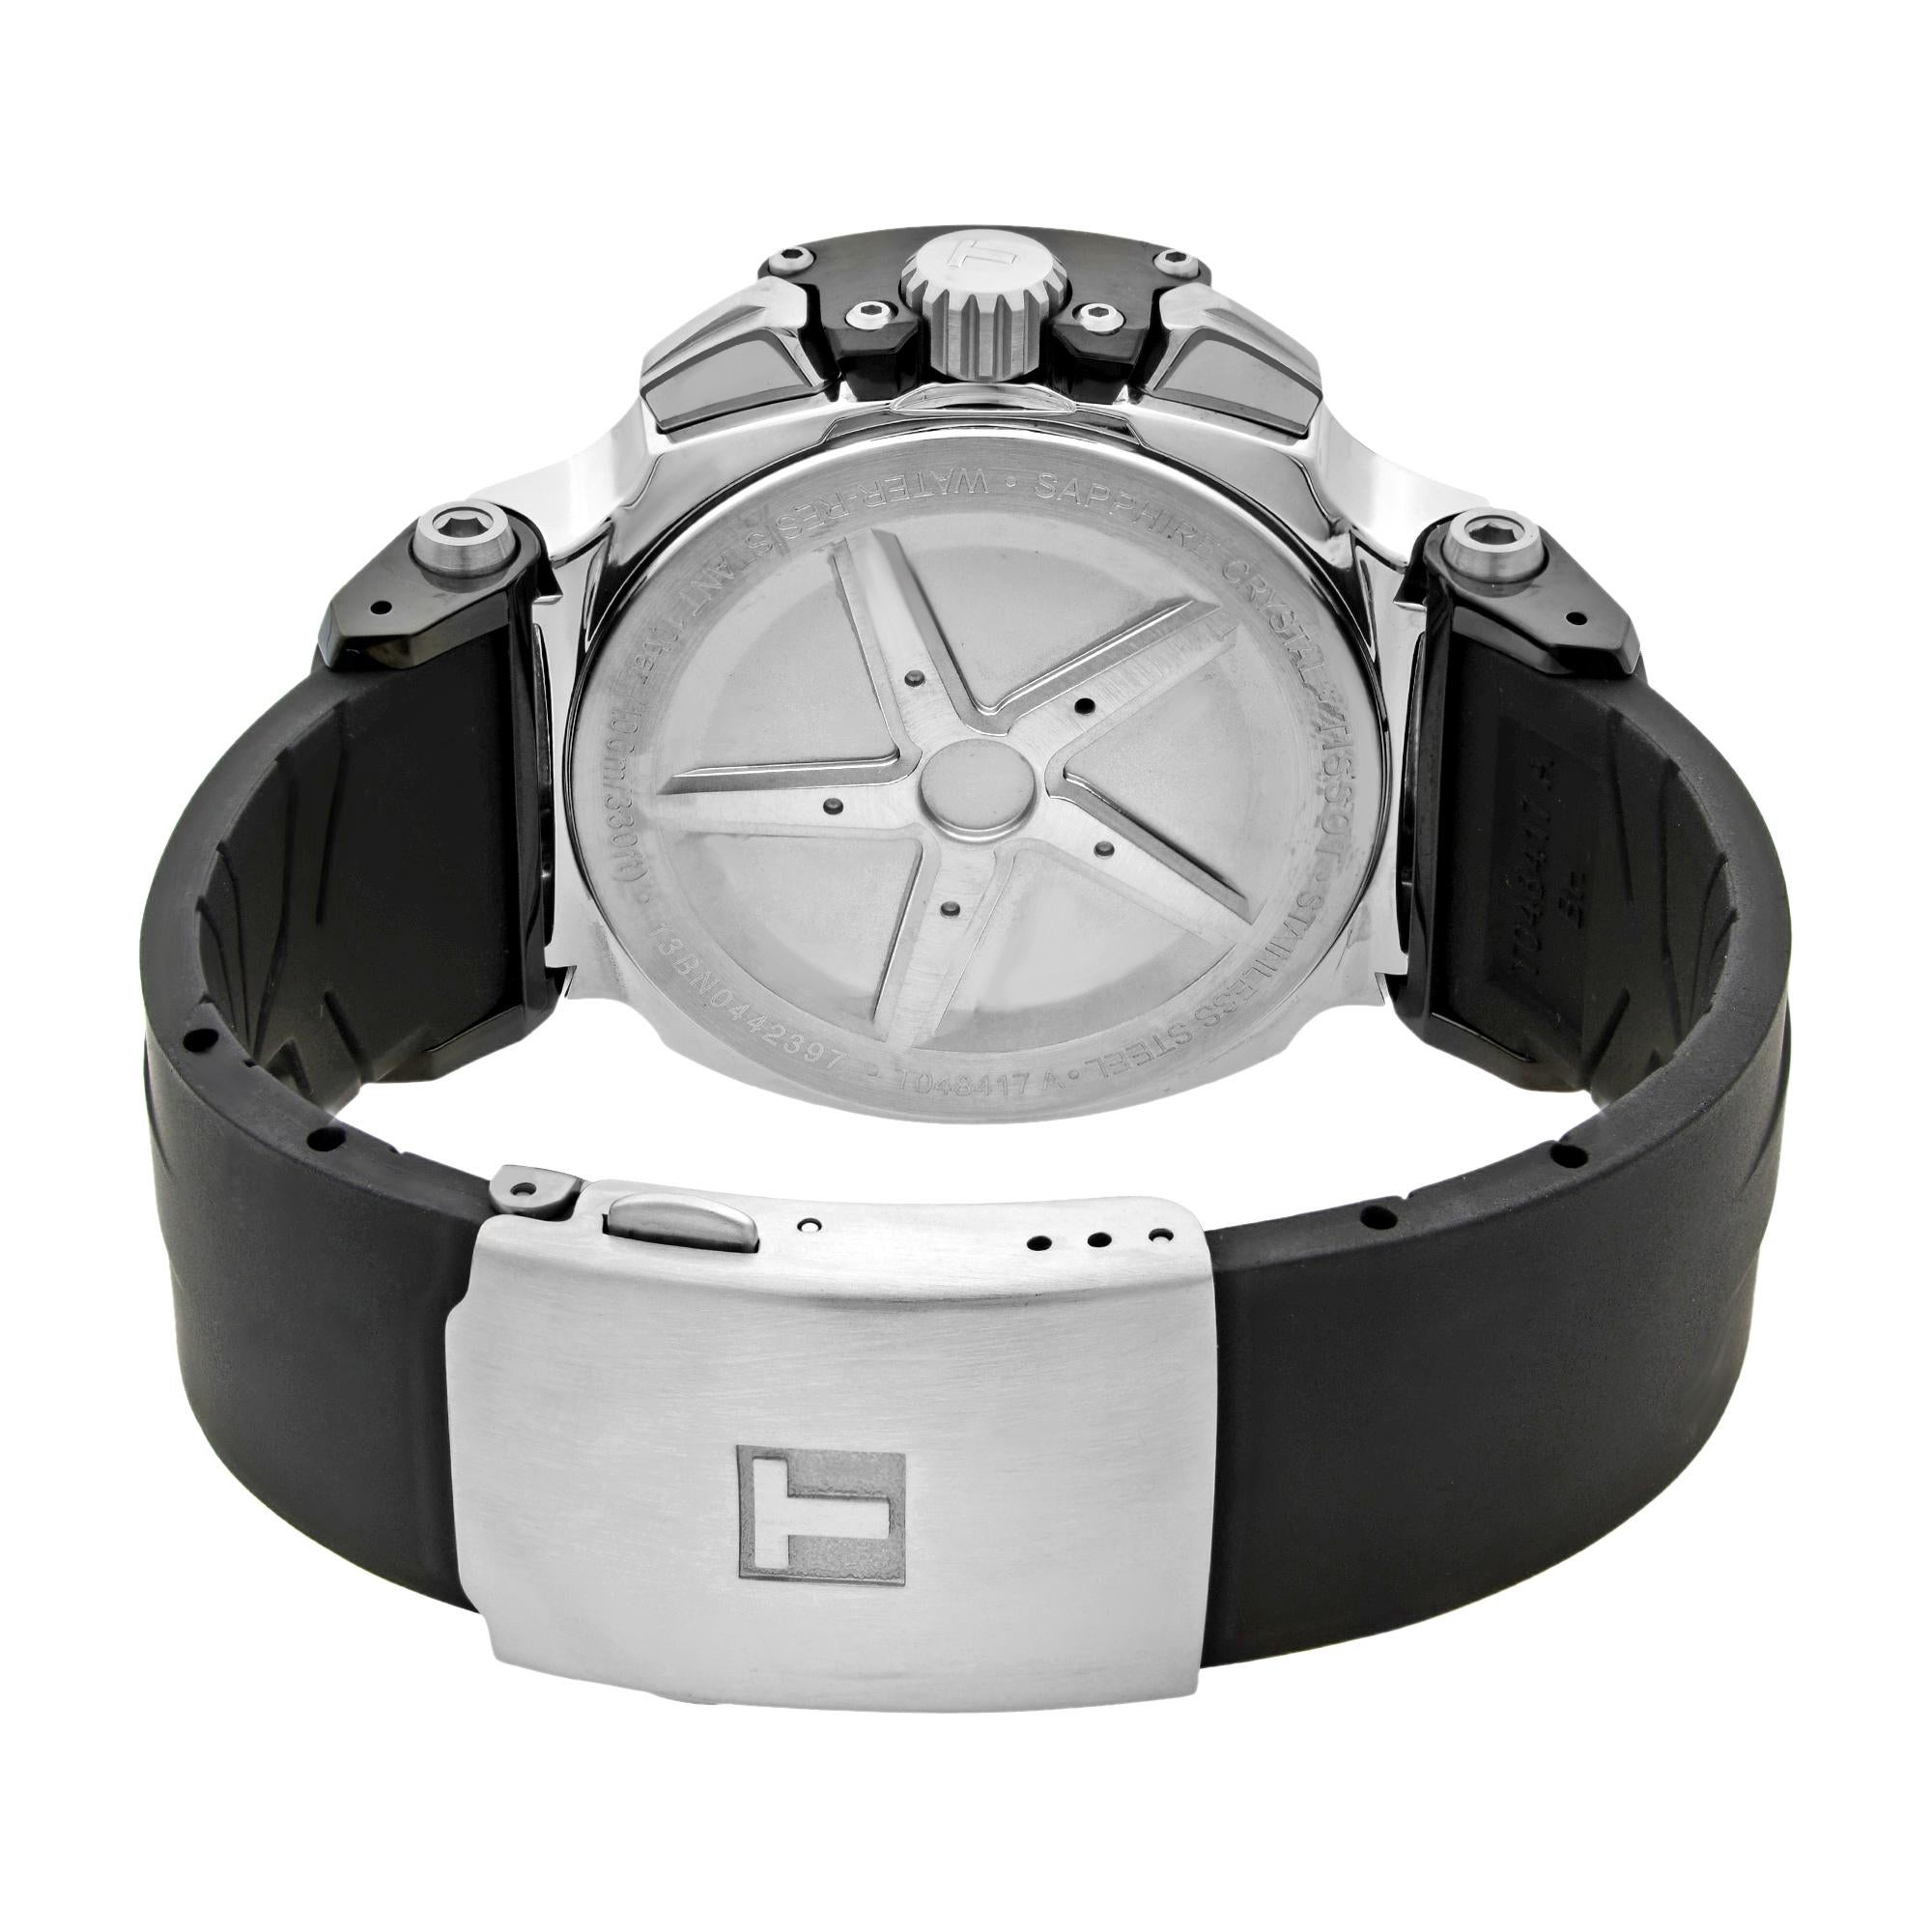 Tissot T-Race Chronograph Steel White Dial Quartz Men’s Watch T048.417.27.037.00 1